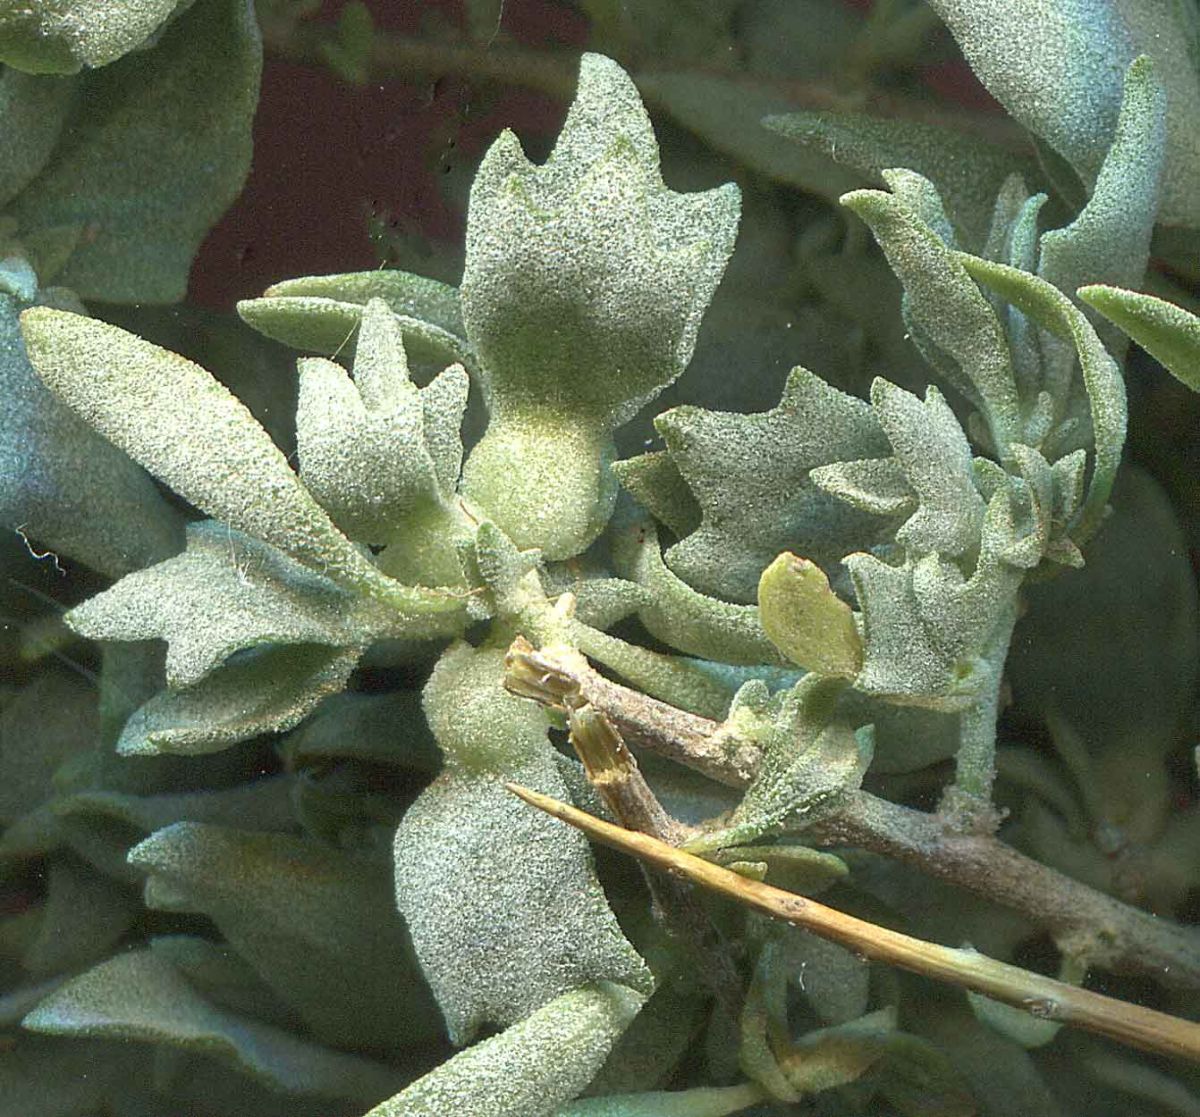 Atriplex spinifera